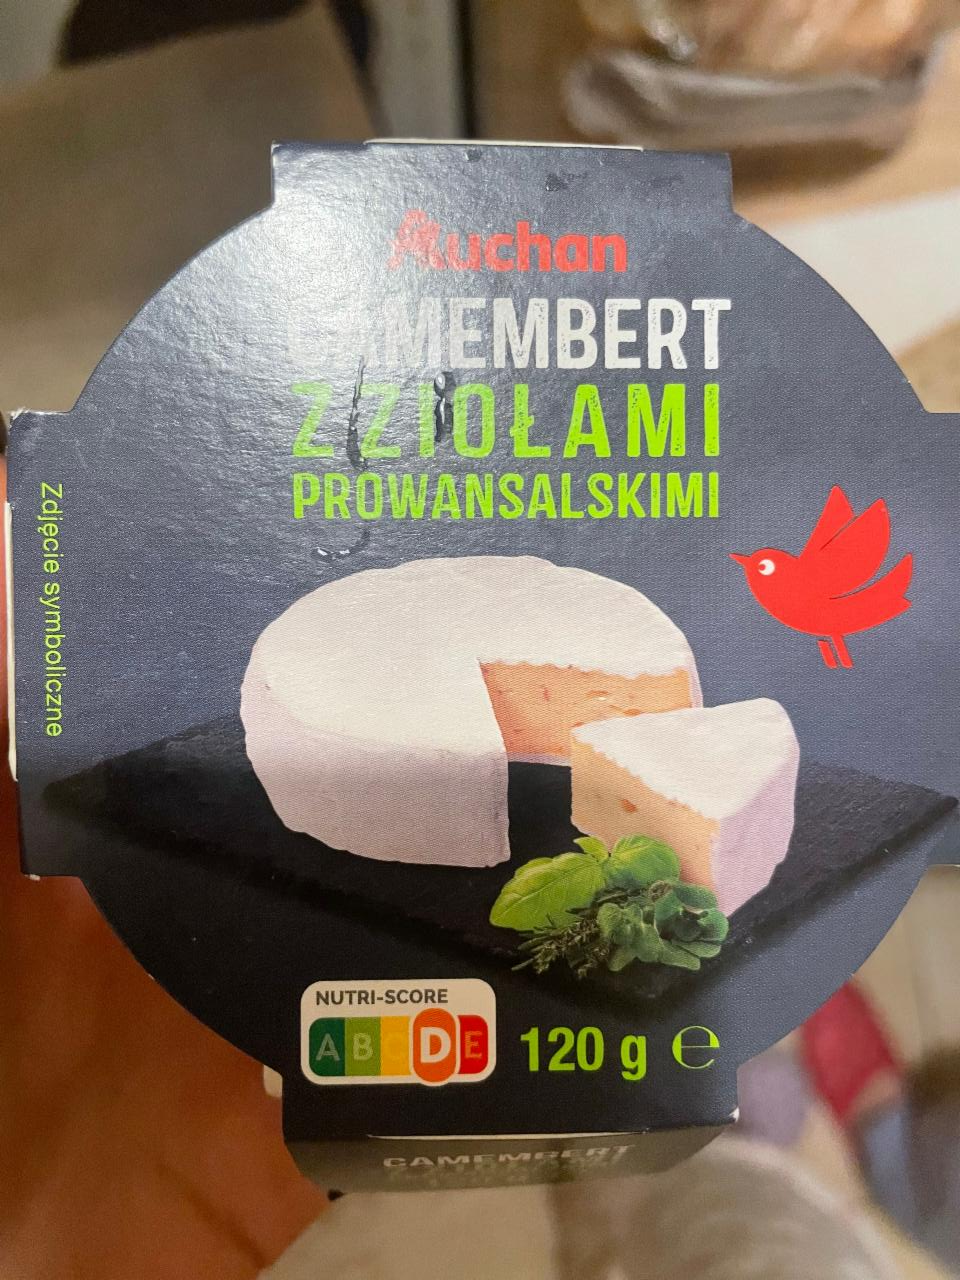 Фото - Сыр Camembert z ziołami prowansalskimi Auchan